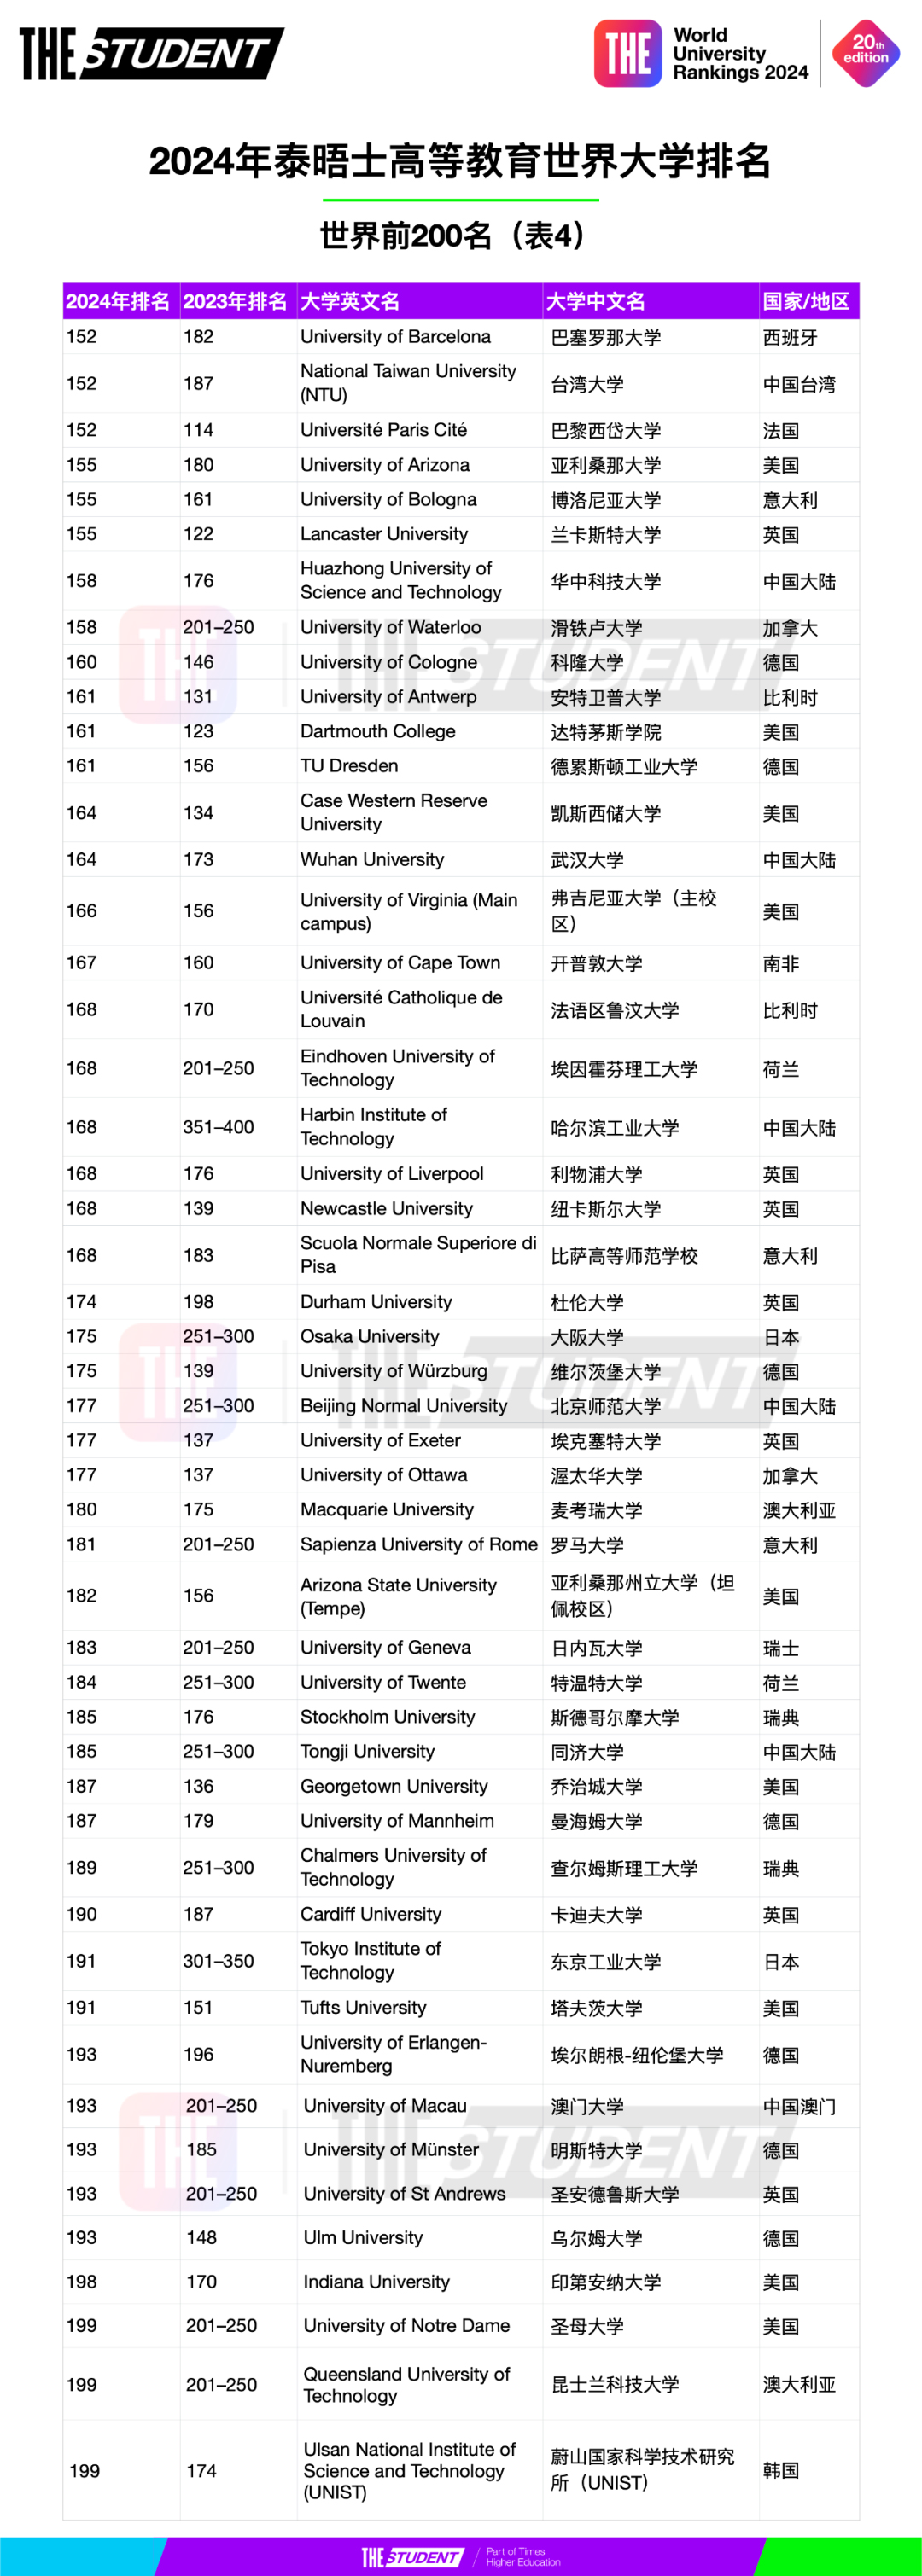 2024年泰晤士高等教育世界大学排名 (4).jpg